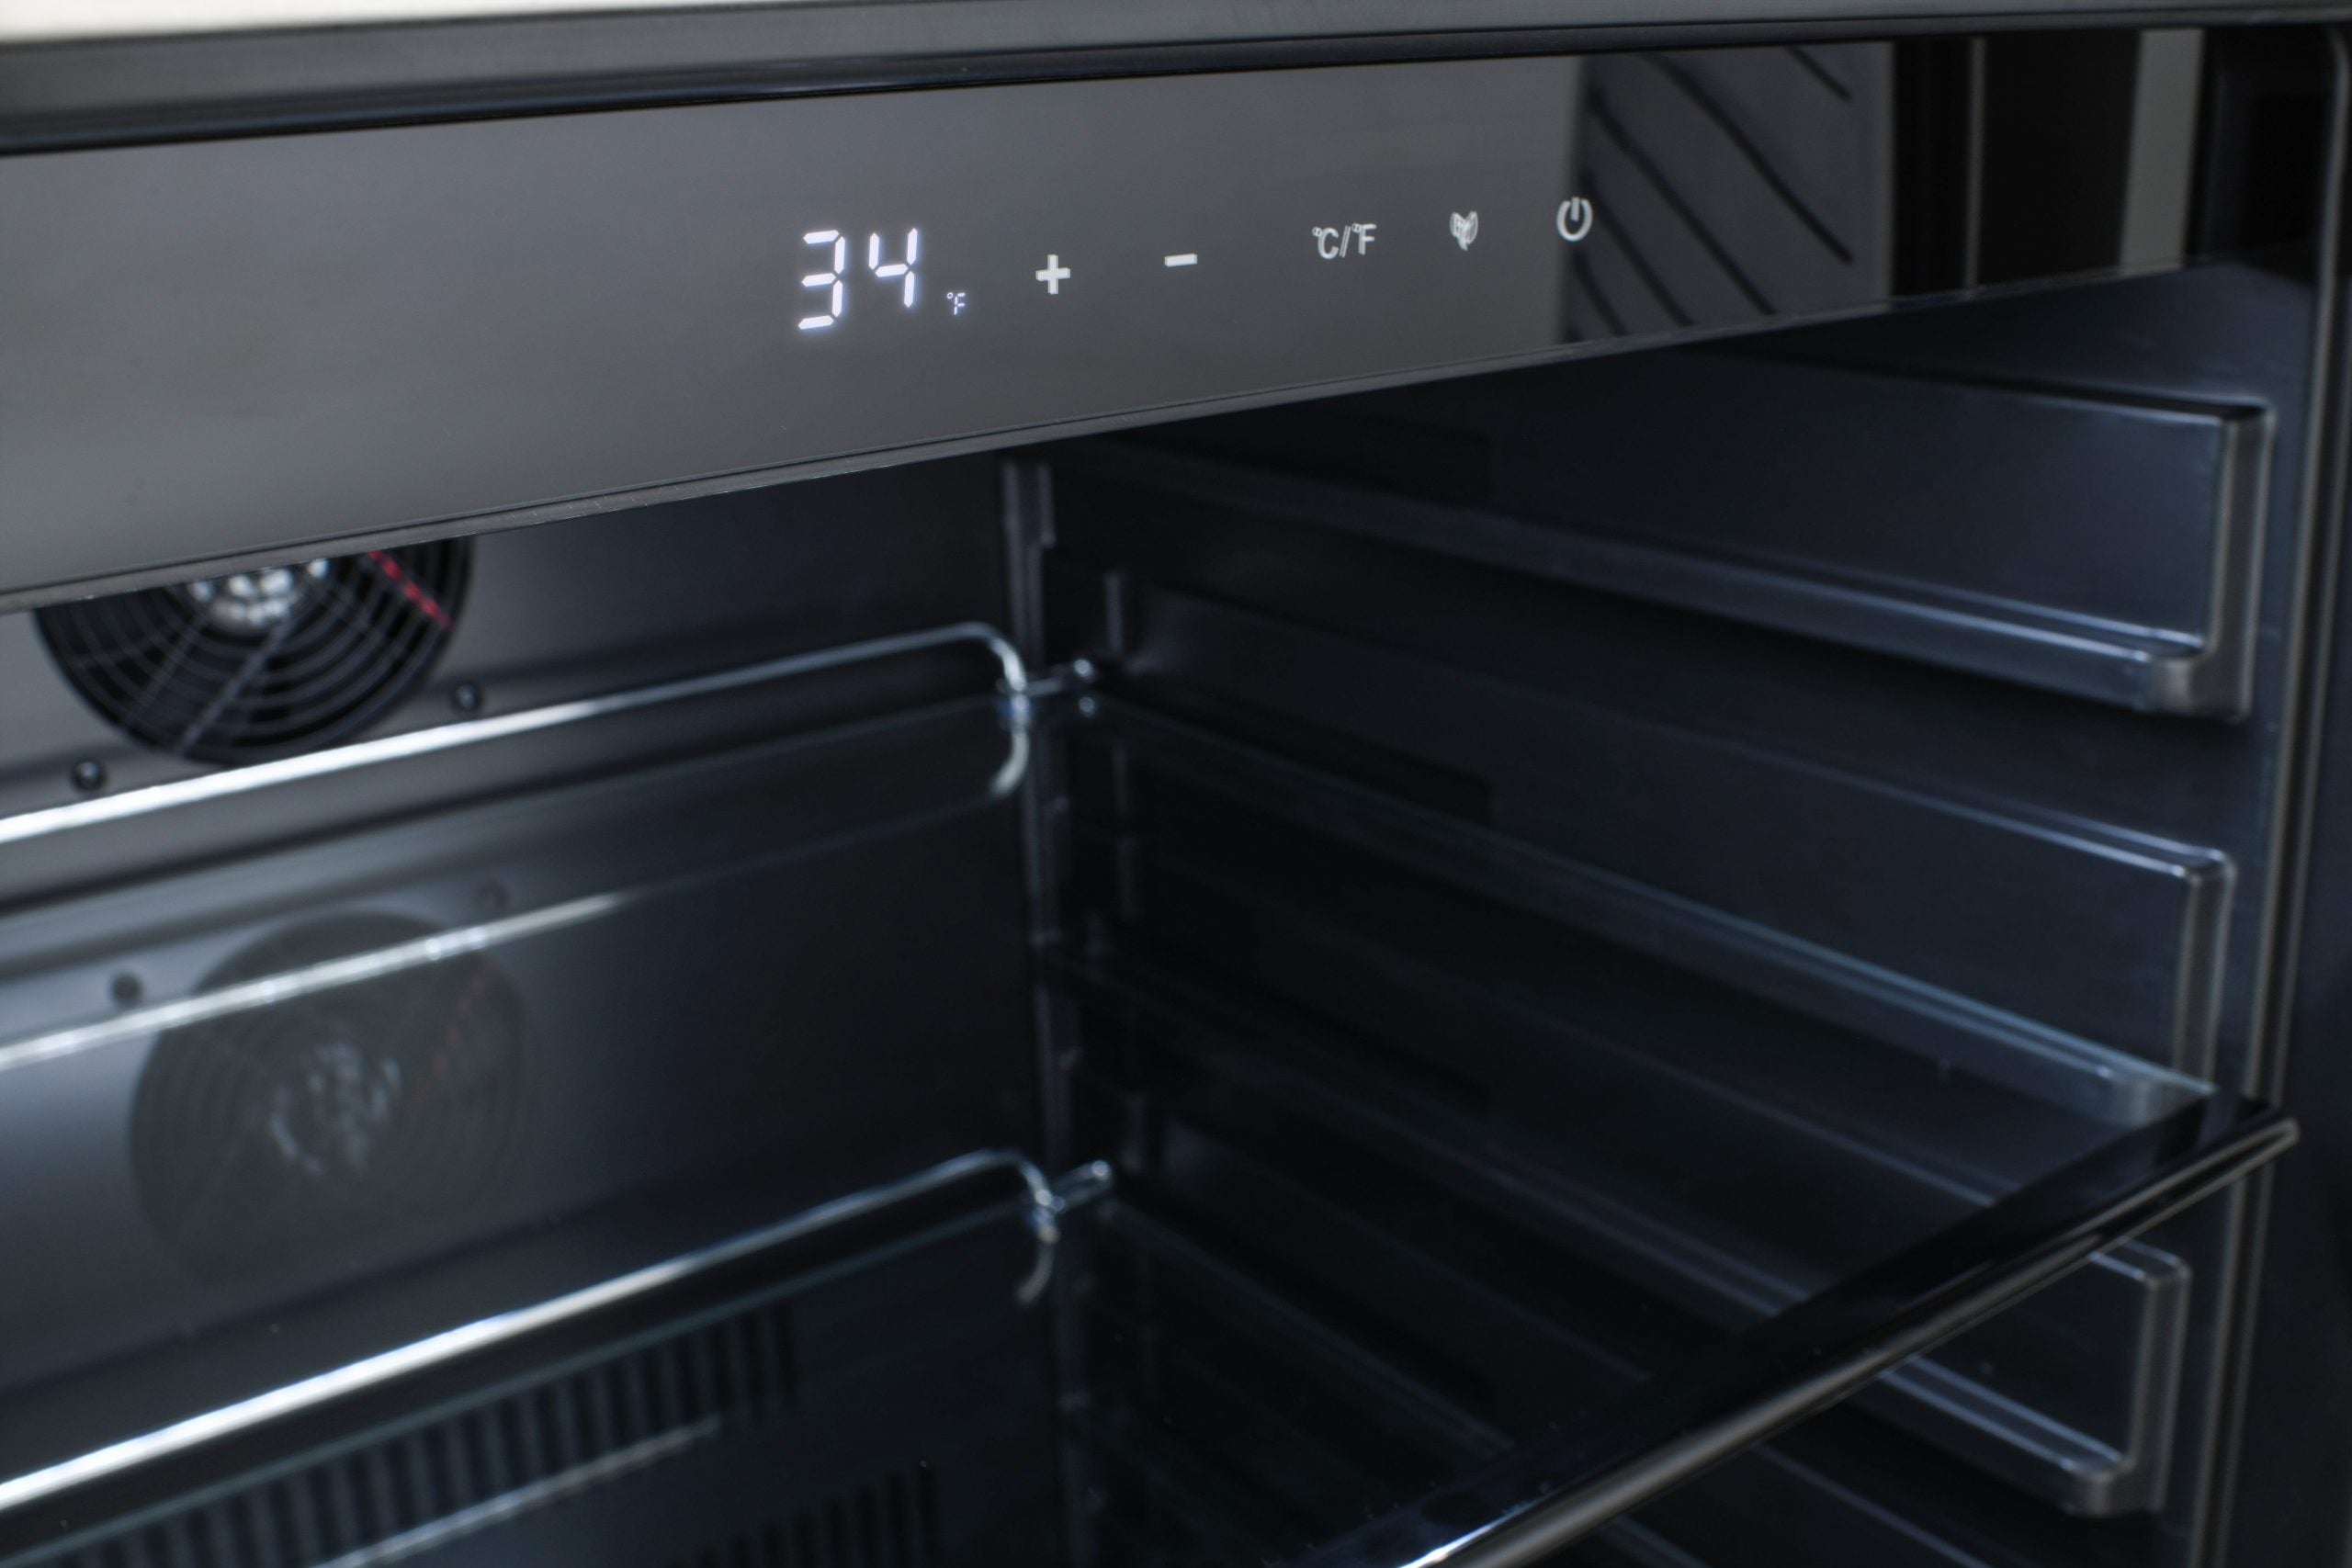 Blaze 24" Outdoor Solid Door  Refrigerator 5.5 CF